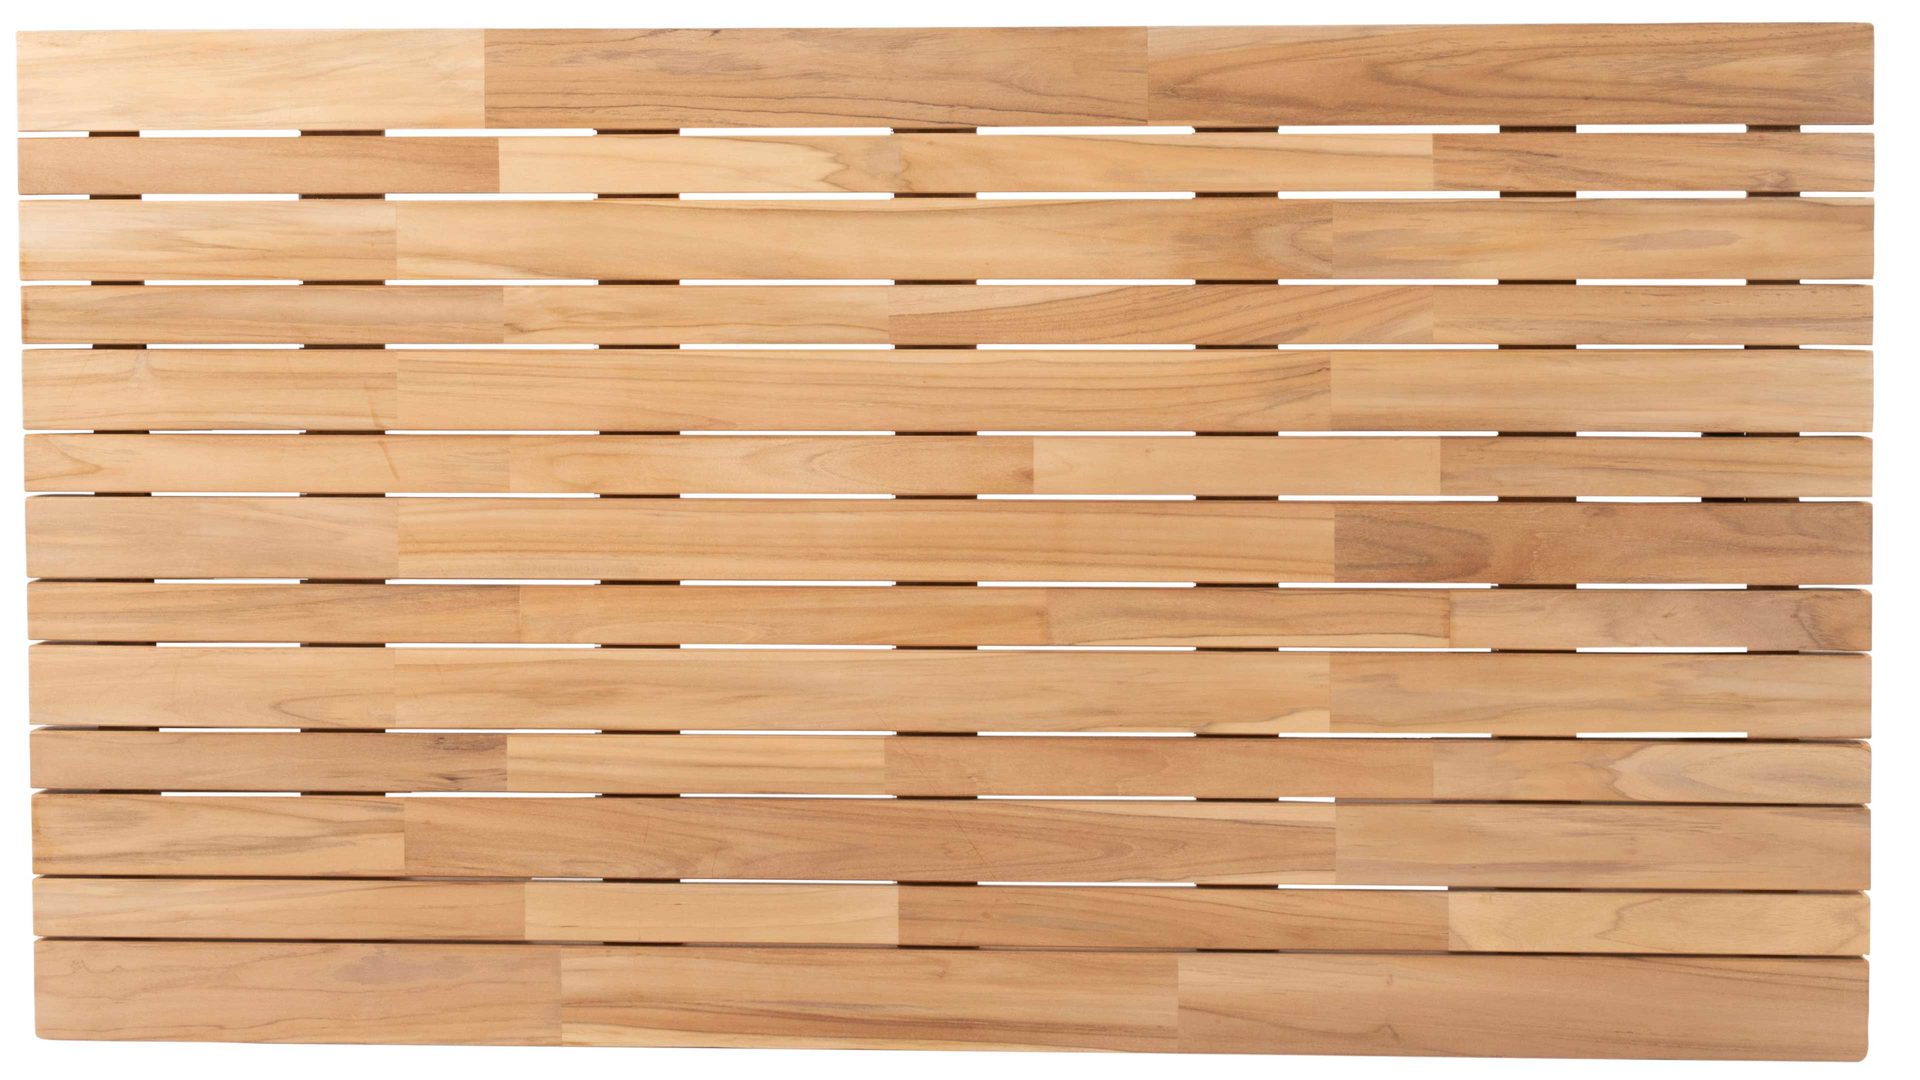 Gartentisch 4so® 4 seasons outdoor aus Holz in Holzfarben 4SO® Tisch-System Ambassador - Tischplatte Teakholz - ca. 240 x 100 cm